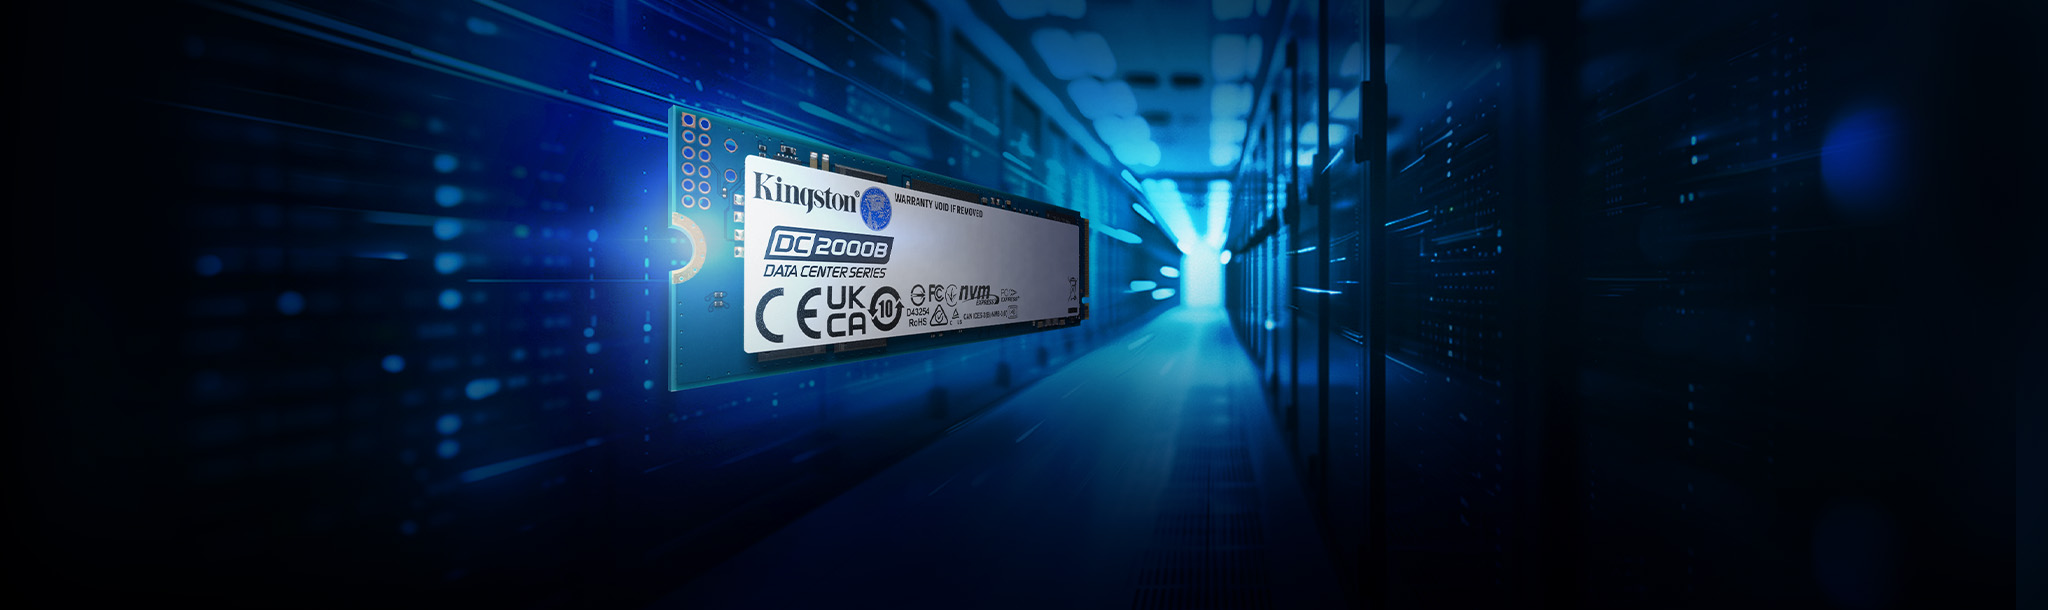 Kingston DC2000B SSD ทาบบนฉลากหลังเรียบง่ายที่แสดงถึงการเคลื่อนที่และความเร็ว